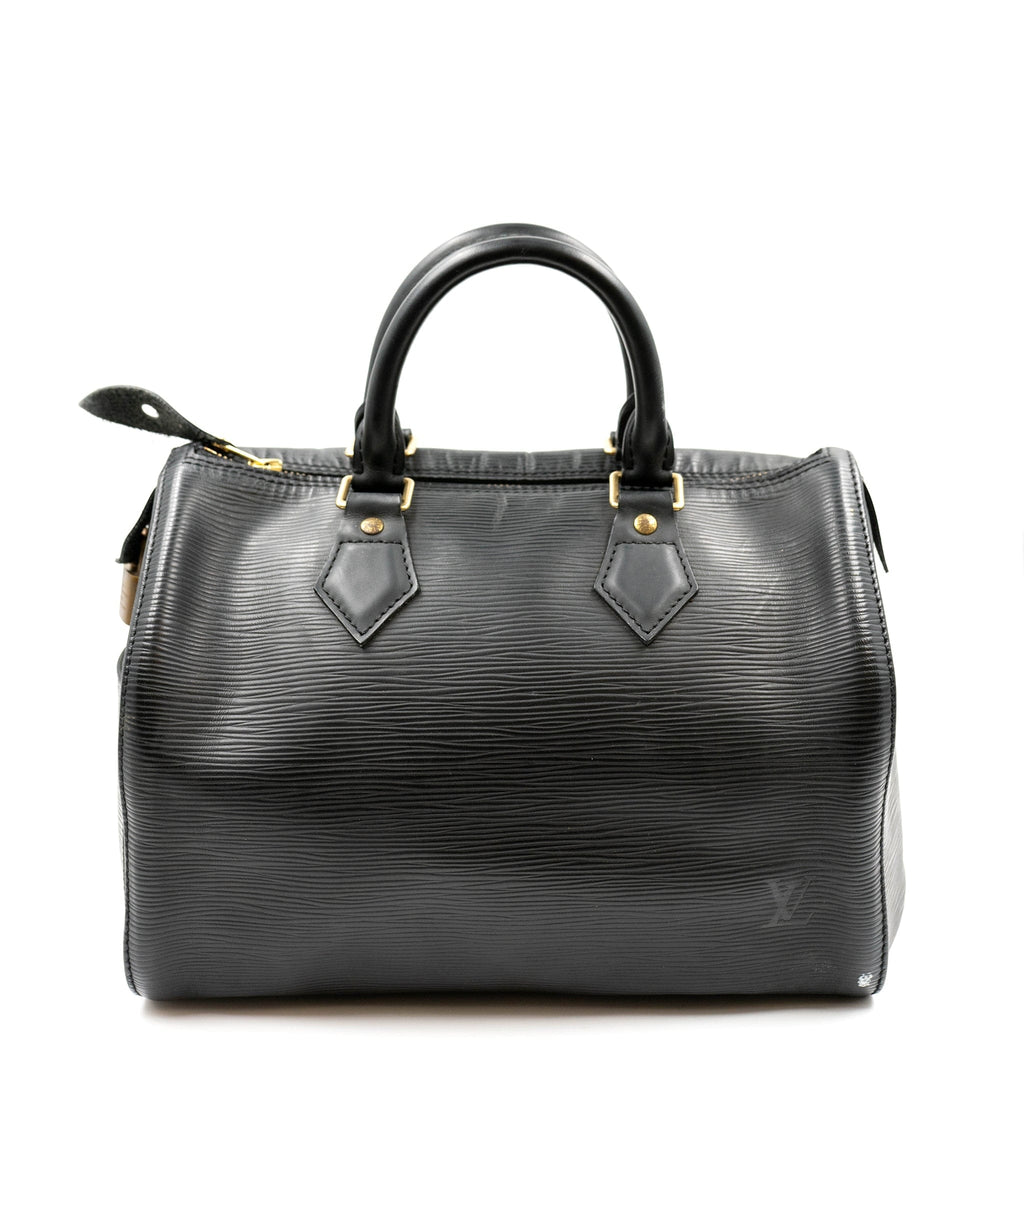 Louis Vuitton Black Epi Leather Speedy 25 Bag - AGL1468 